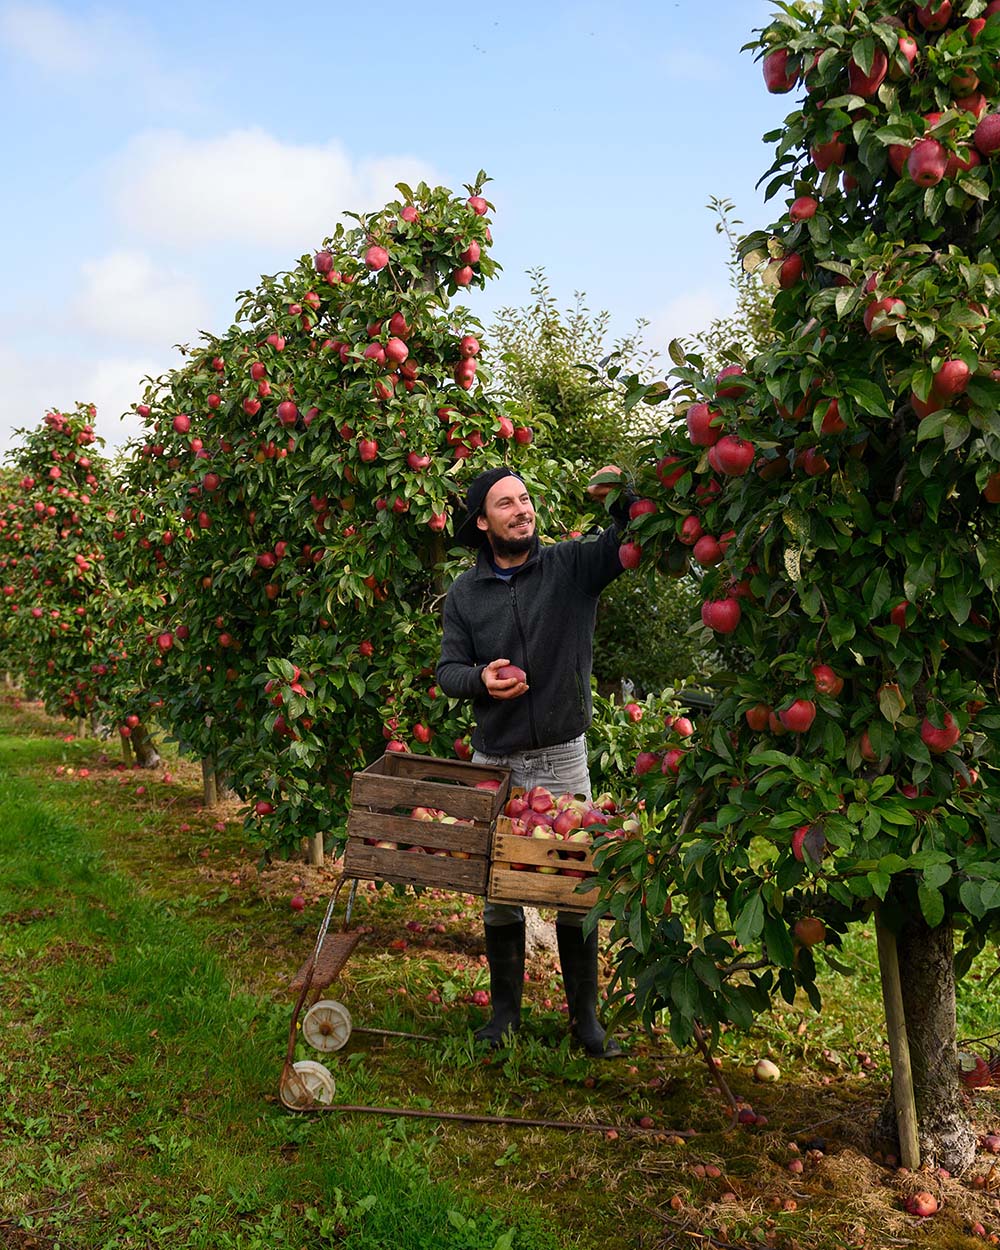 Obstbauer Lasse Tamke bei der Apfelernte: Er pflückt gerade einige Äpfel der Sorte Gloster 196 von den Bäumen seiner Felder im Alten Land.